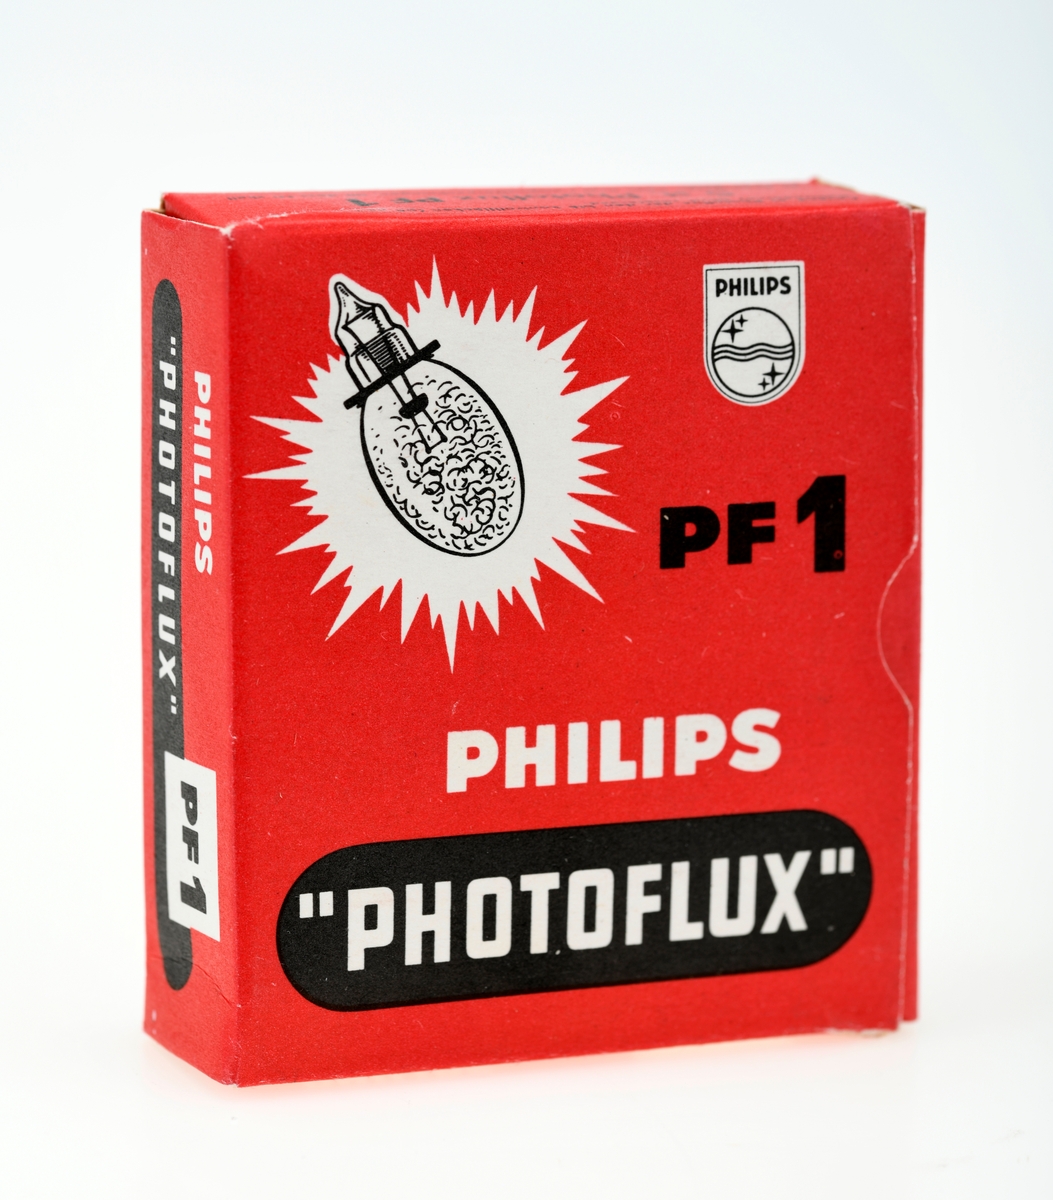 En eske med to ubrukte blitspærer av typen Philips Photoflux PF1. På esken er det tabell over kamerablender ved ulike avstander og filmtyper. Pærene har et blått felt inni pæra som indikerer at de er ubrukt, og dette feltet blir rosa ved bruk. Pærene er lakkert for å unngå at de knuser ved bruk. I esken ligger det også en liten manual. 

Blitspærer ble først introdusert som en erstatning for blitspulver i 1929. Blitspærene er lagd for engangsbruk og er derfor pakket i esker med fem eller ti pærer. Pærer uten skrufot ble introdusert i 1954 og bidro til å senke prisen på pærene, og de har i stedet en ring som holder de to metalltrådene fra pæra på plass.